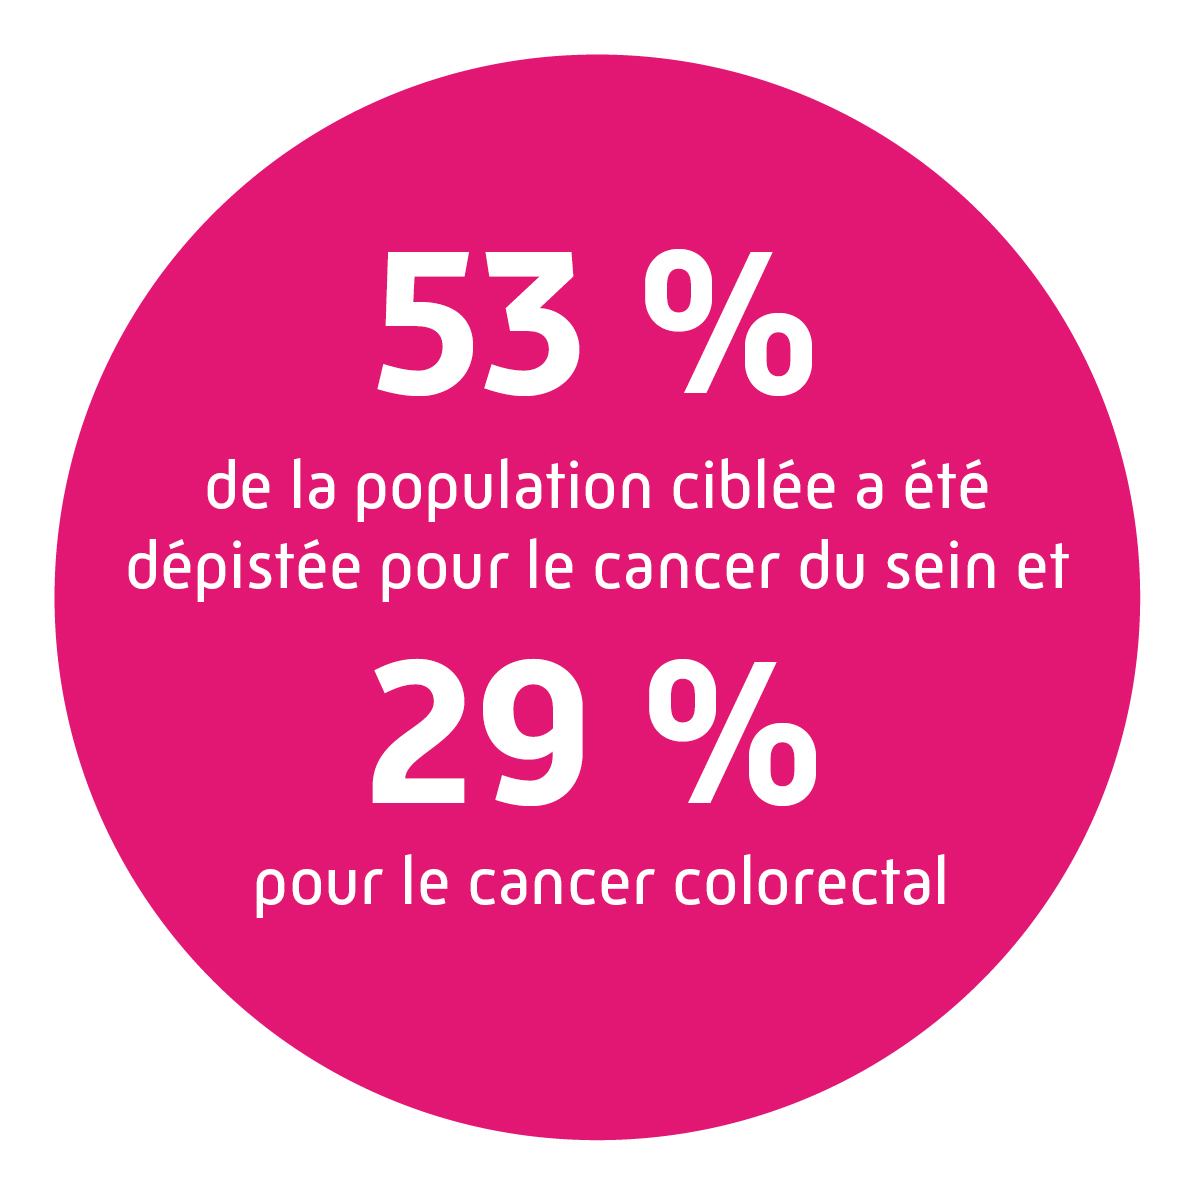 53 % de la population ciblée a été dépisté pour le cancer du sein et 29 % pour le cancer colorectal.